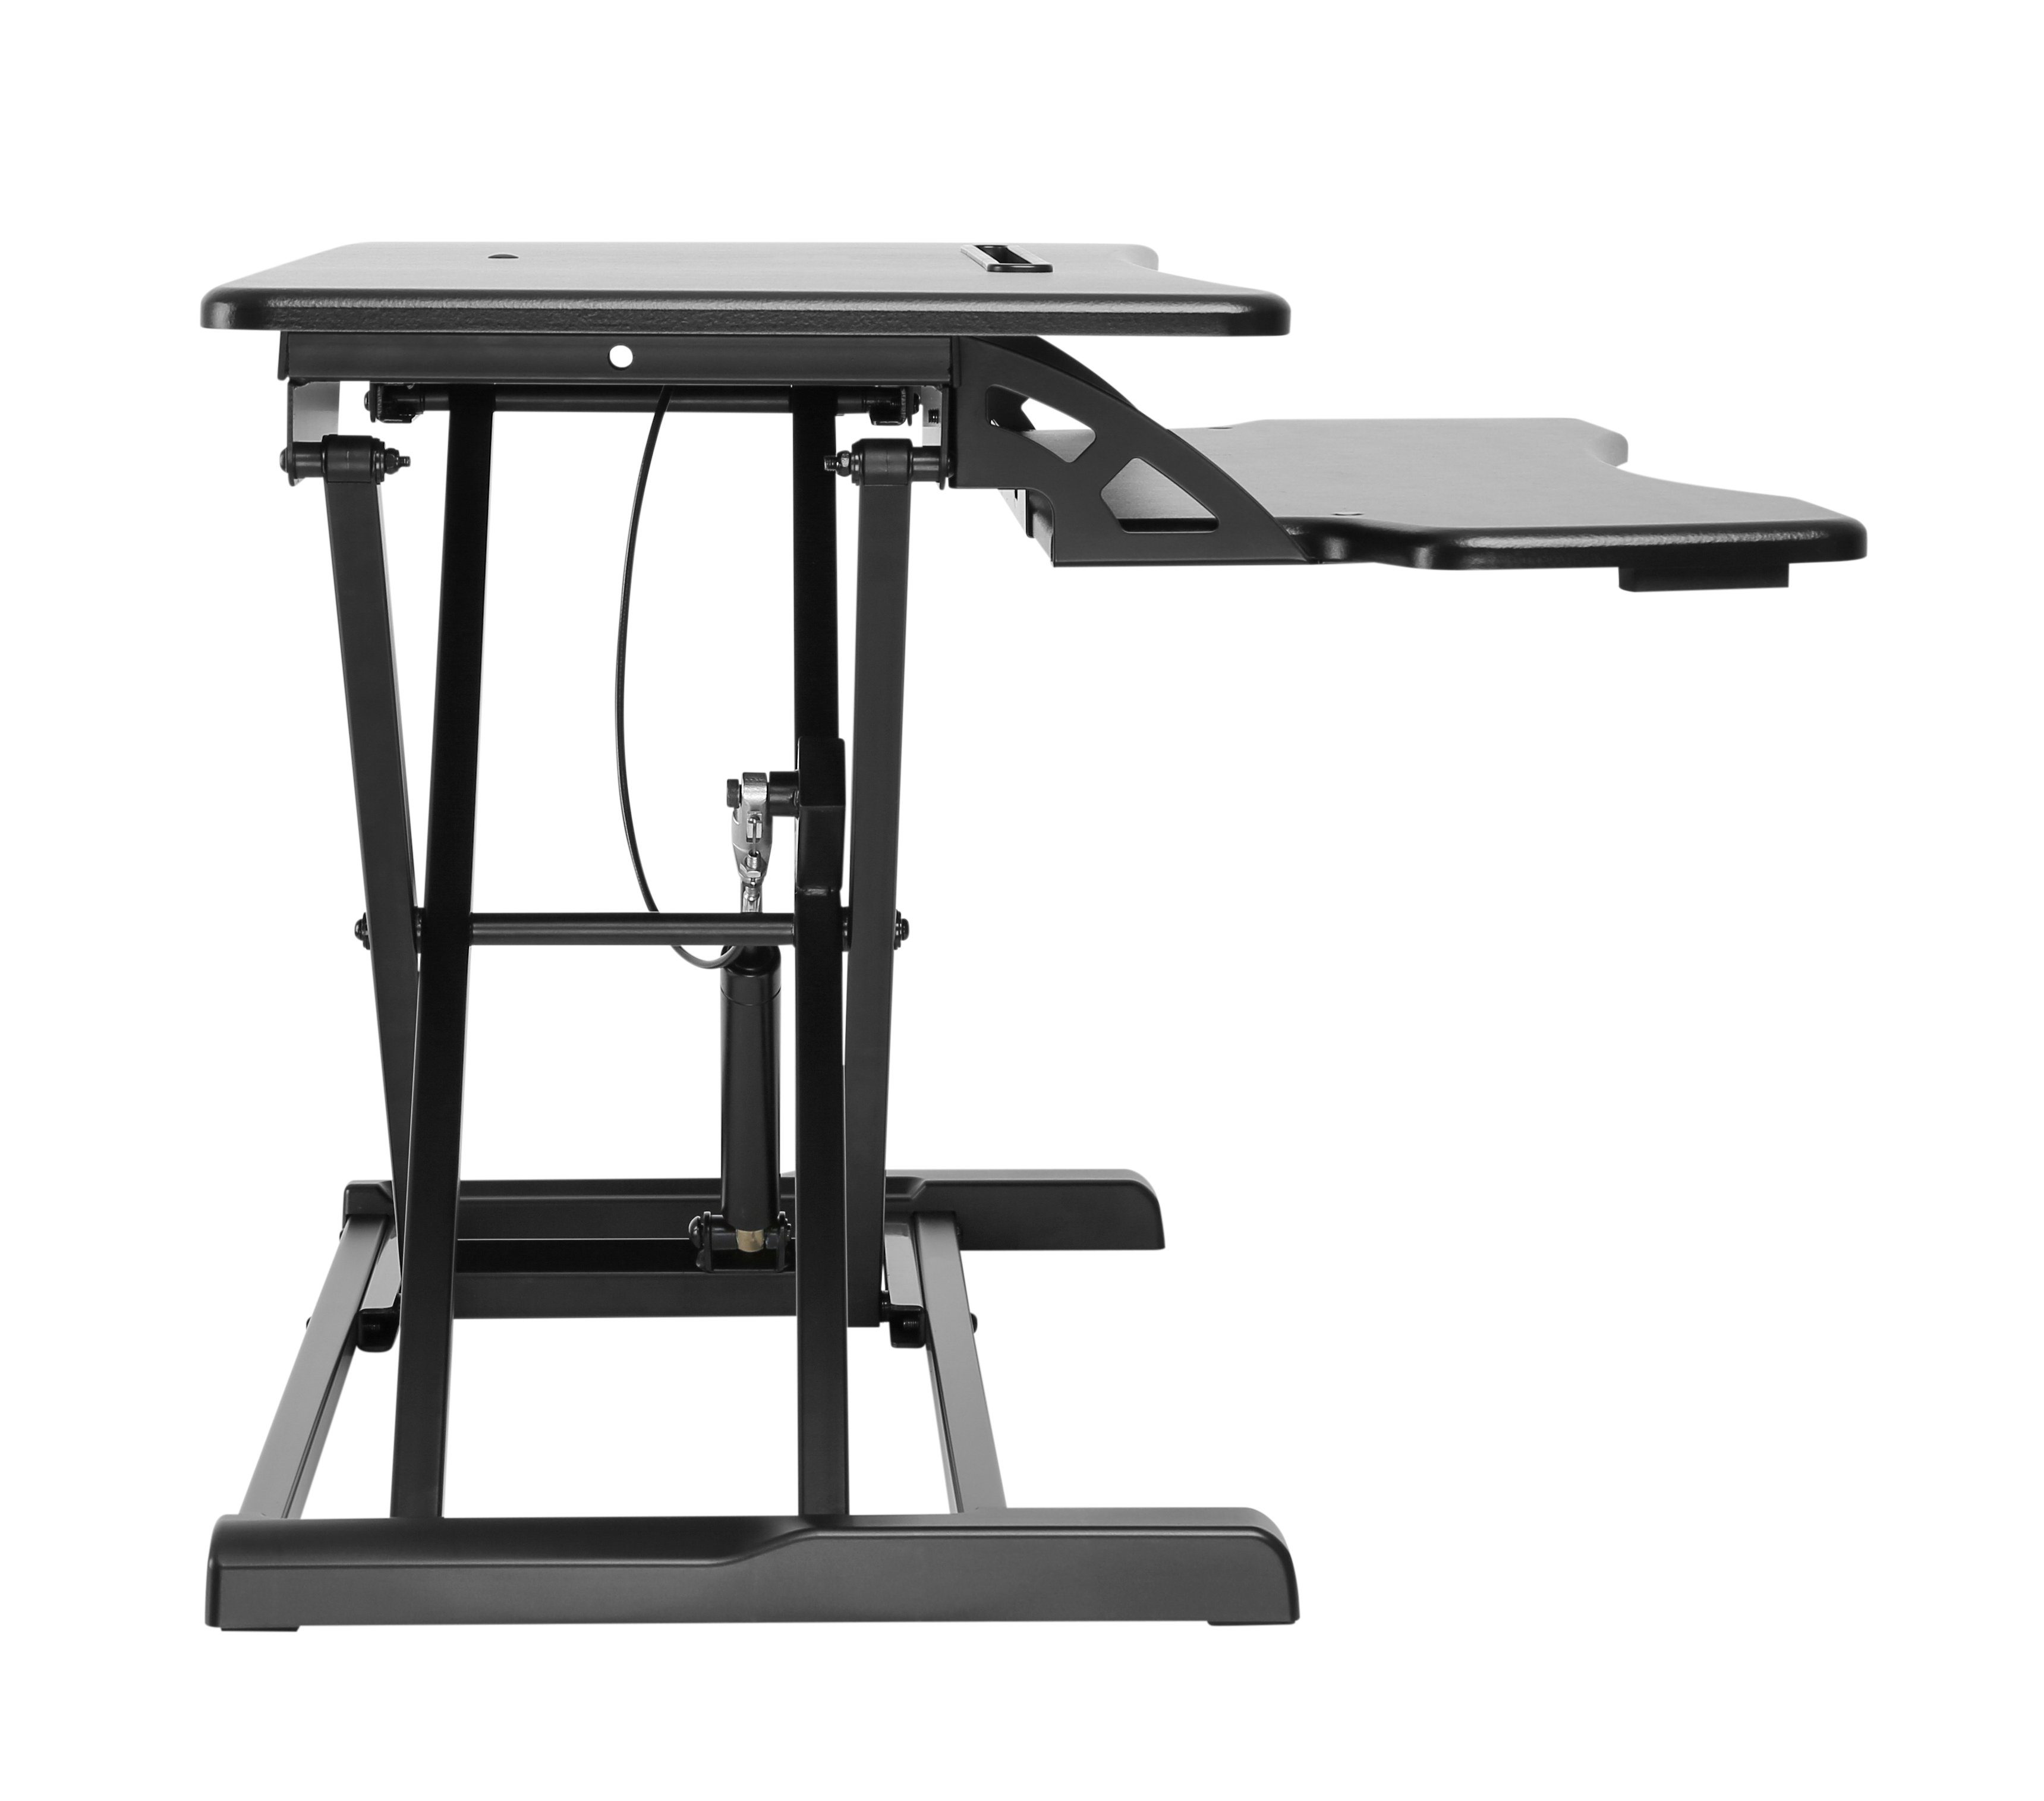 Schreibtischaufsatz Steh-Sitz für Höhenverstellbar, Schreibtisch Aufsatz GTS-011, mit HALTERUNGSPROFI HALTERUNGSPROFI Gasdruckfeder